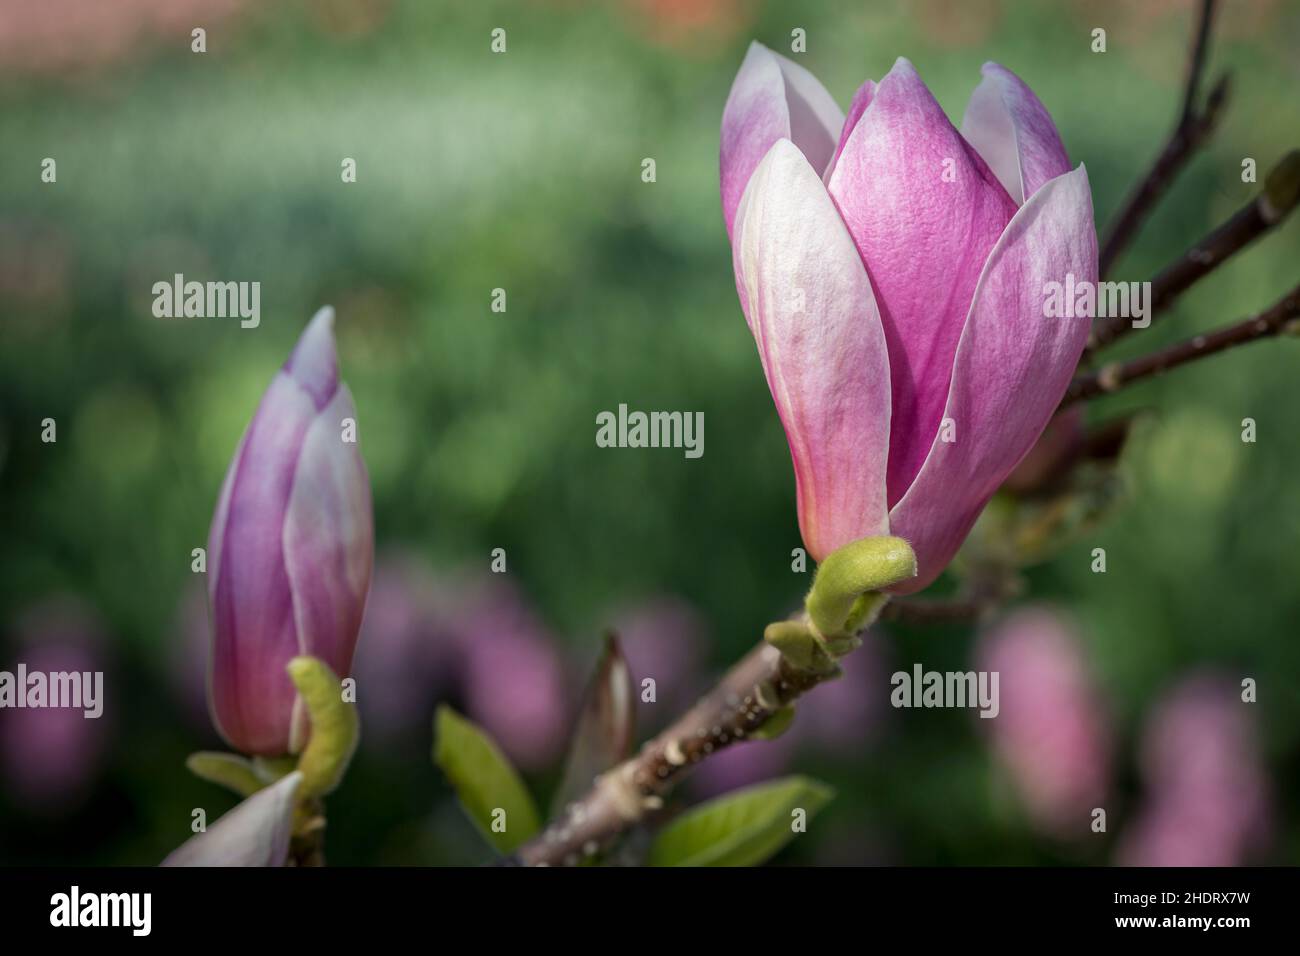 magnolia, magnolia flower, magnolias, magnolia flowers Stock Photo